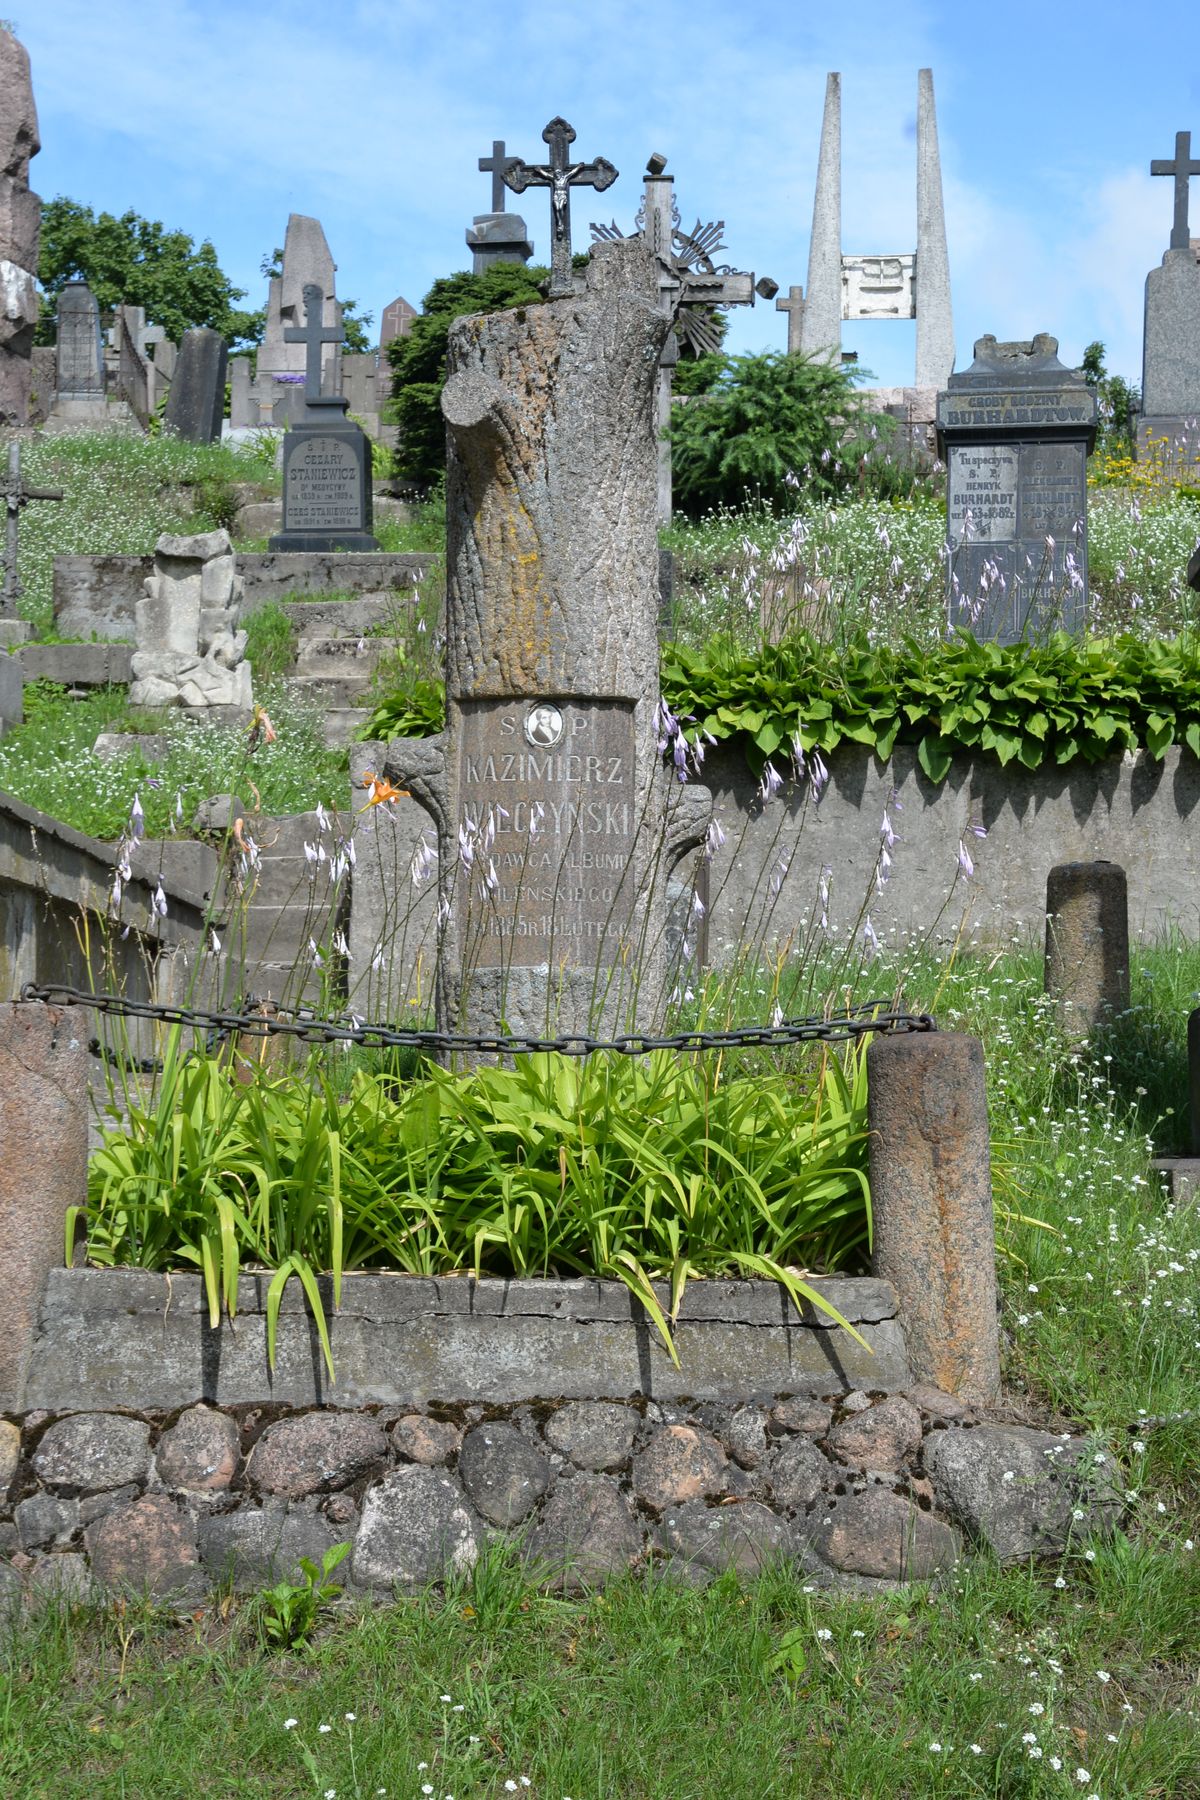 Tombstone of Kazimierz Wilczynski, Ross cemetery, as of 2016